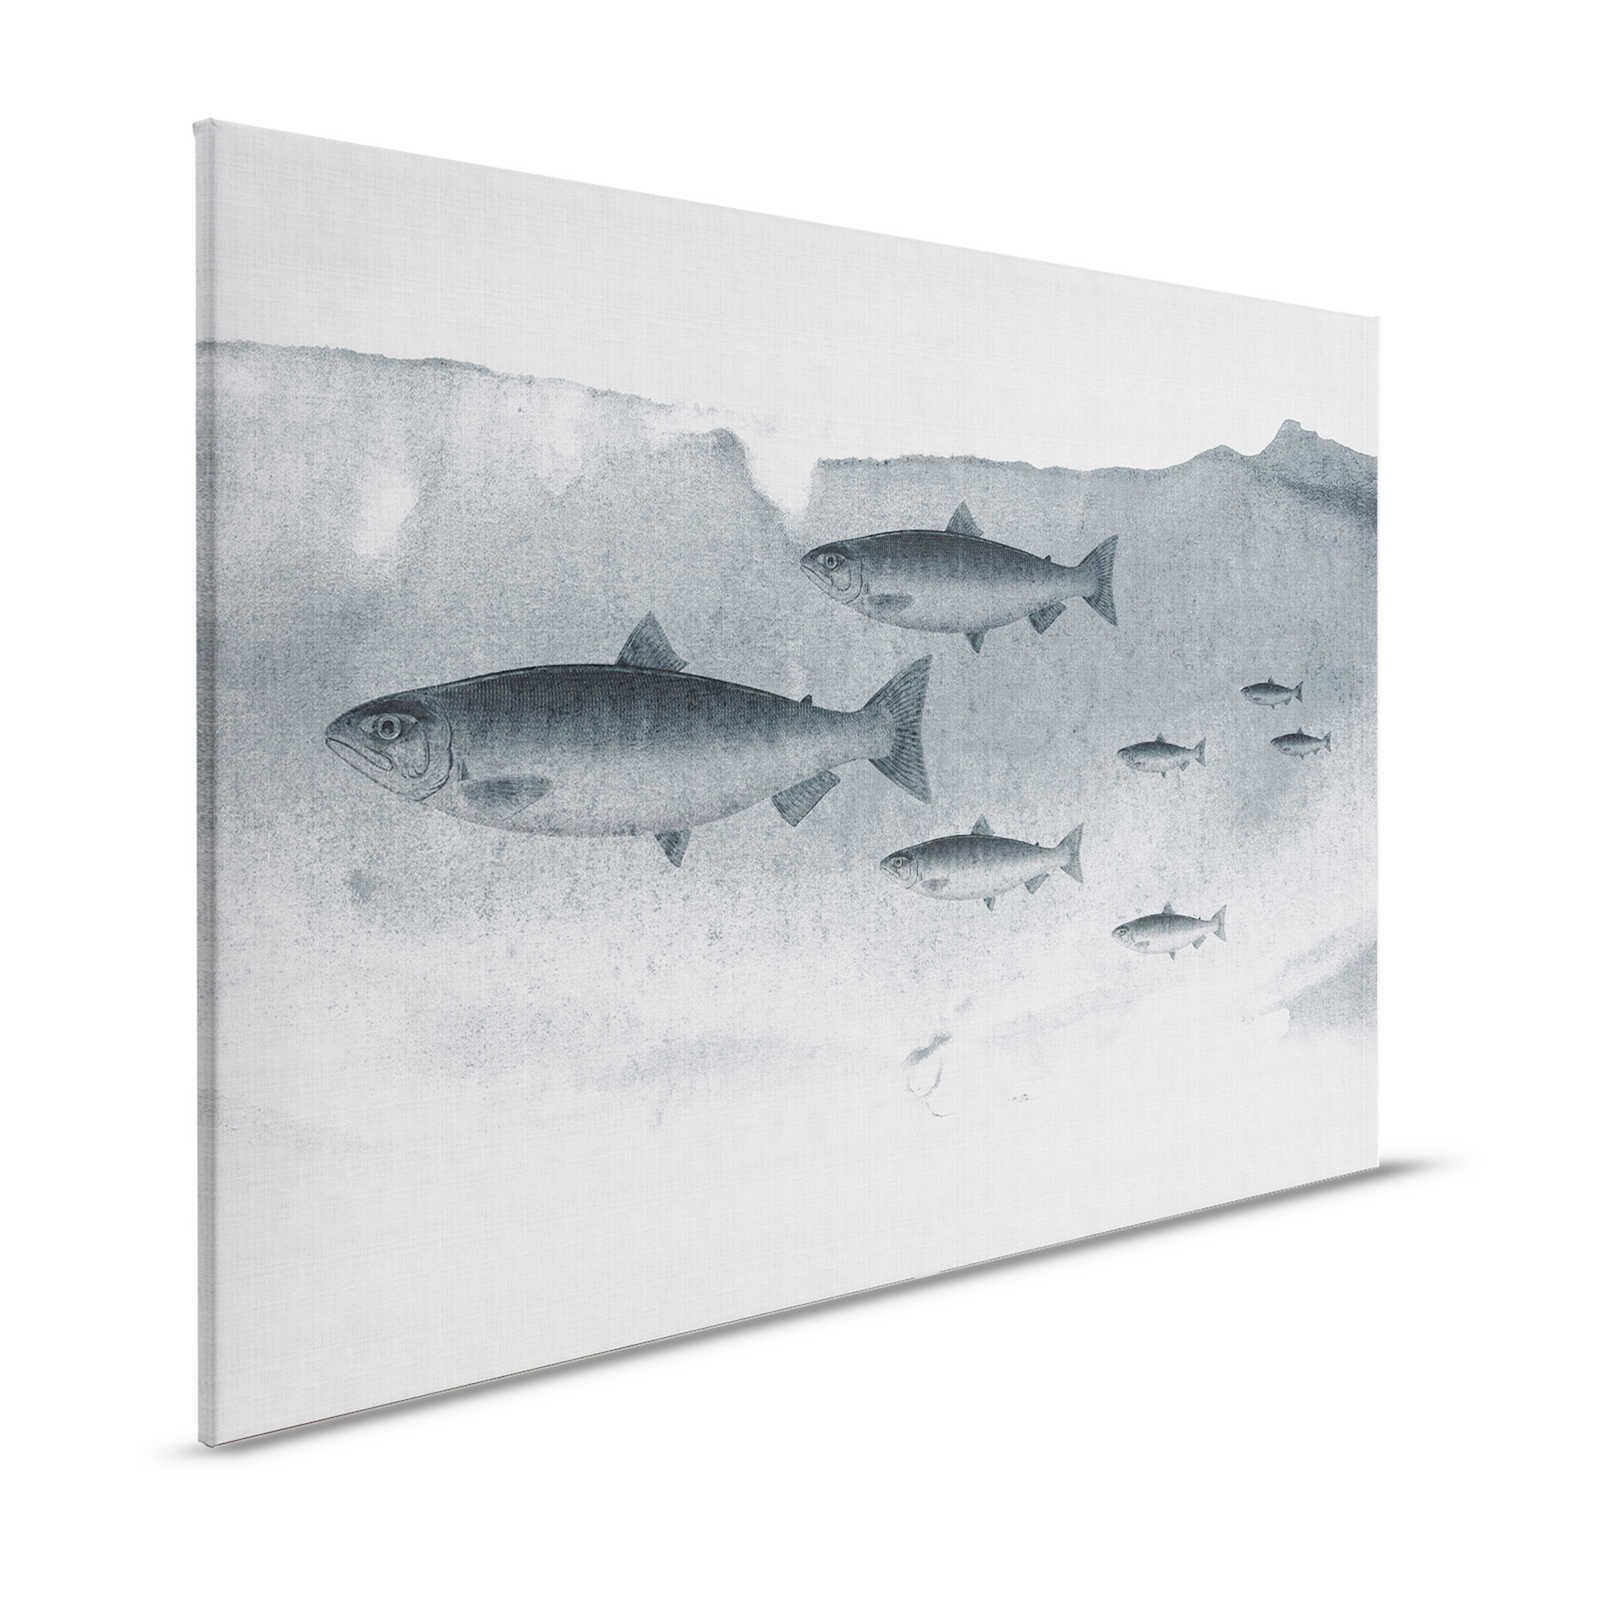 Into the blue 3 - aquarelle de poisson en gris comme toile - 1,20 m x 0,80 m
